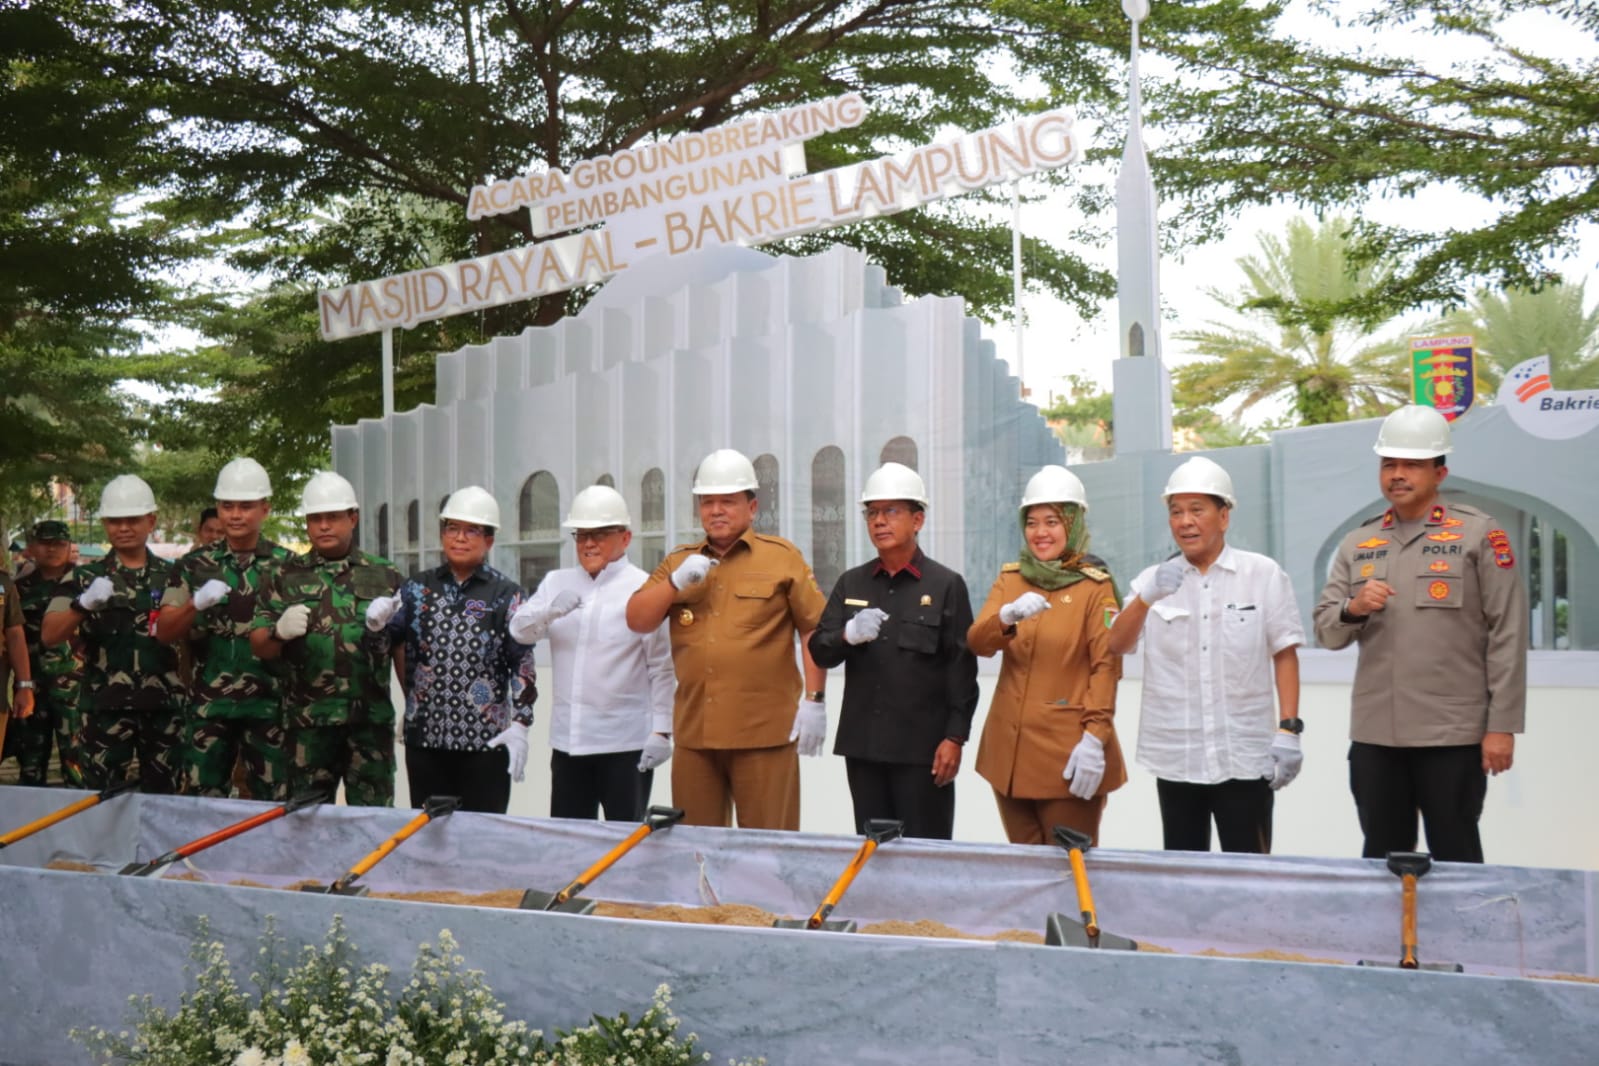 Wakapolda Lampung Hadiri kegiatan Groundbreaking Pembangunan Masjid Raya Al-Bakrie Lampung